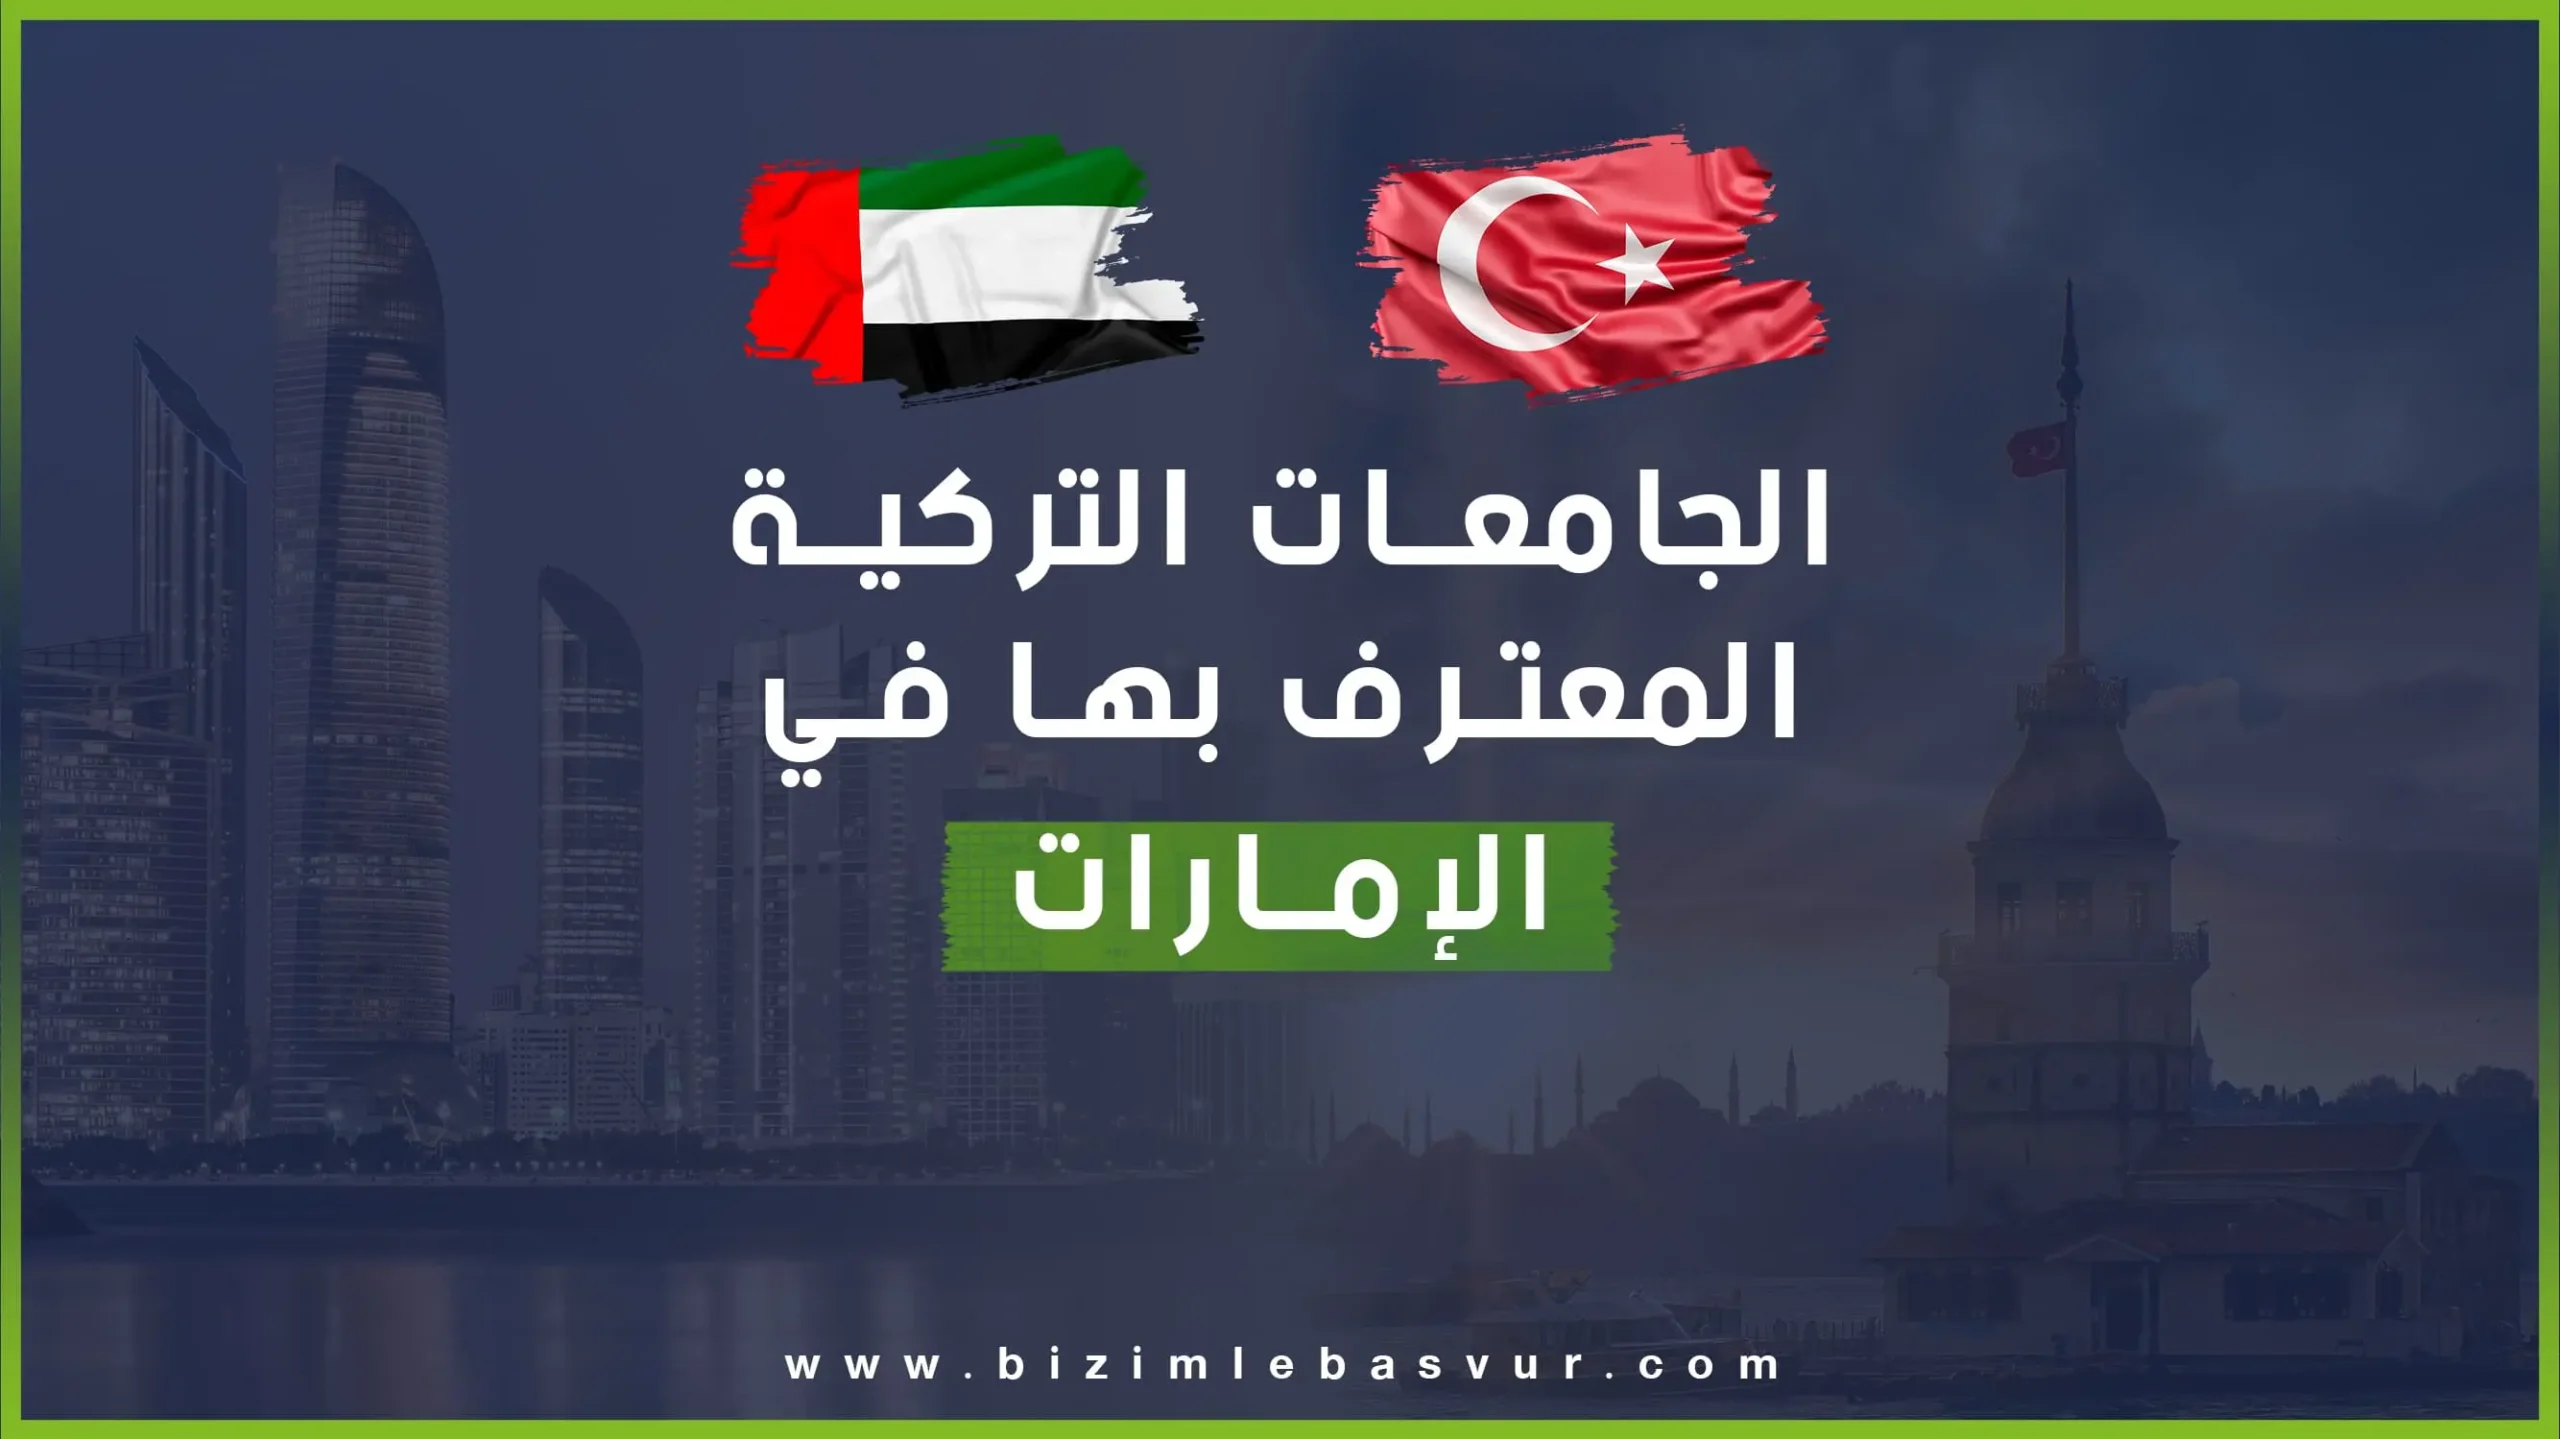 دليل الجامعات التركية المعترف بها في الإمارات هو ما يبحث عنه الطلاب الإماراتيون والمقيمون في الإمارات من الراغبين في الدراسة في تركيا